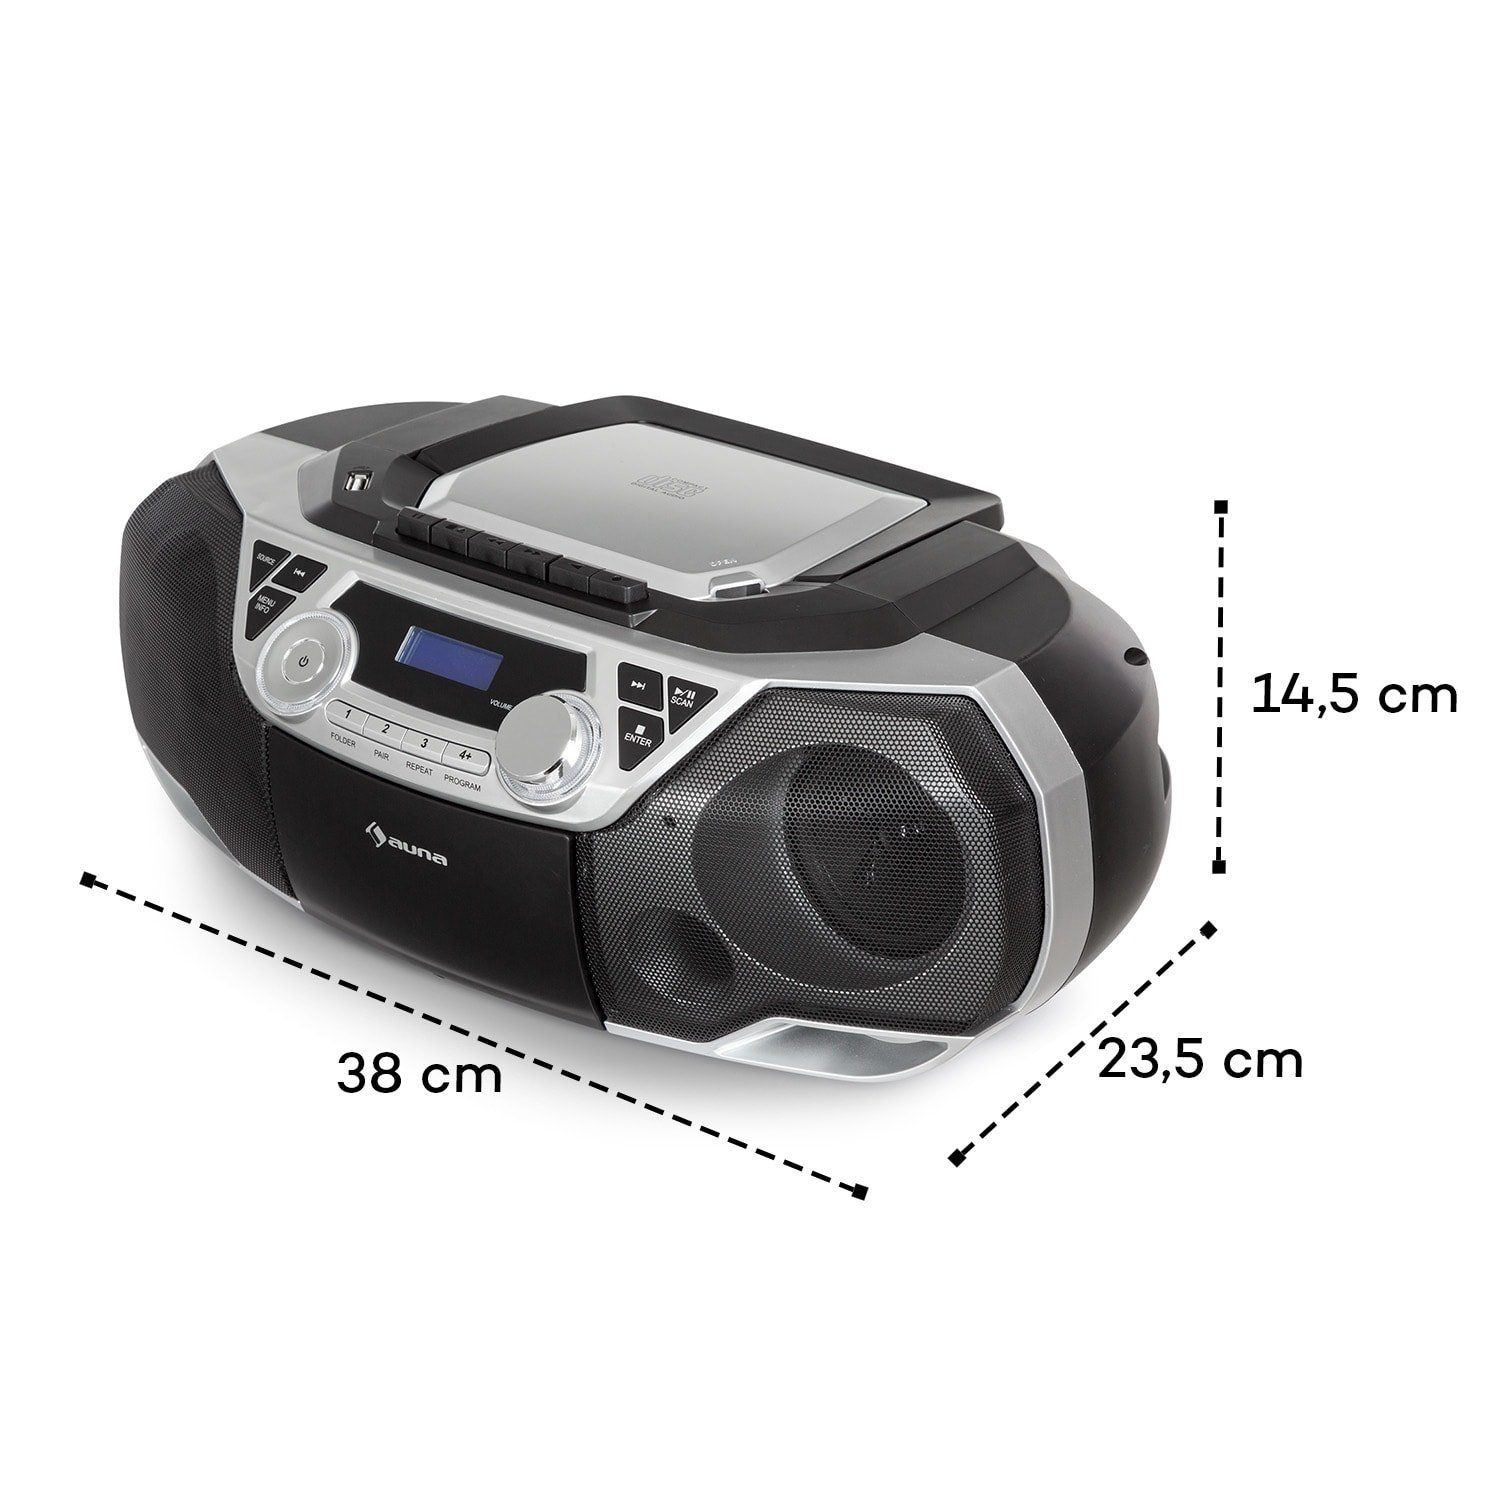 Roadie Kinder Soundbox) Bluetooth CD Radio UKW-Radiotuner, und Spieler tragbar CD 2K (DAB+ Auna Musikbox Radio Player